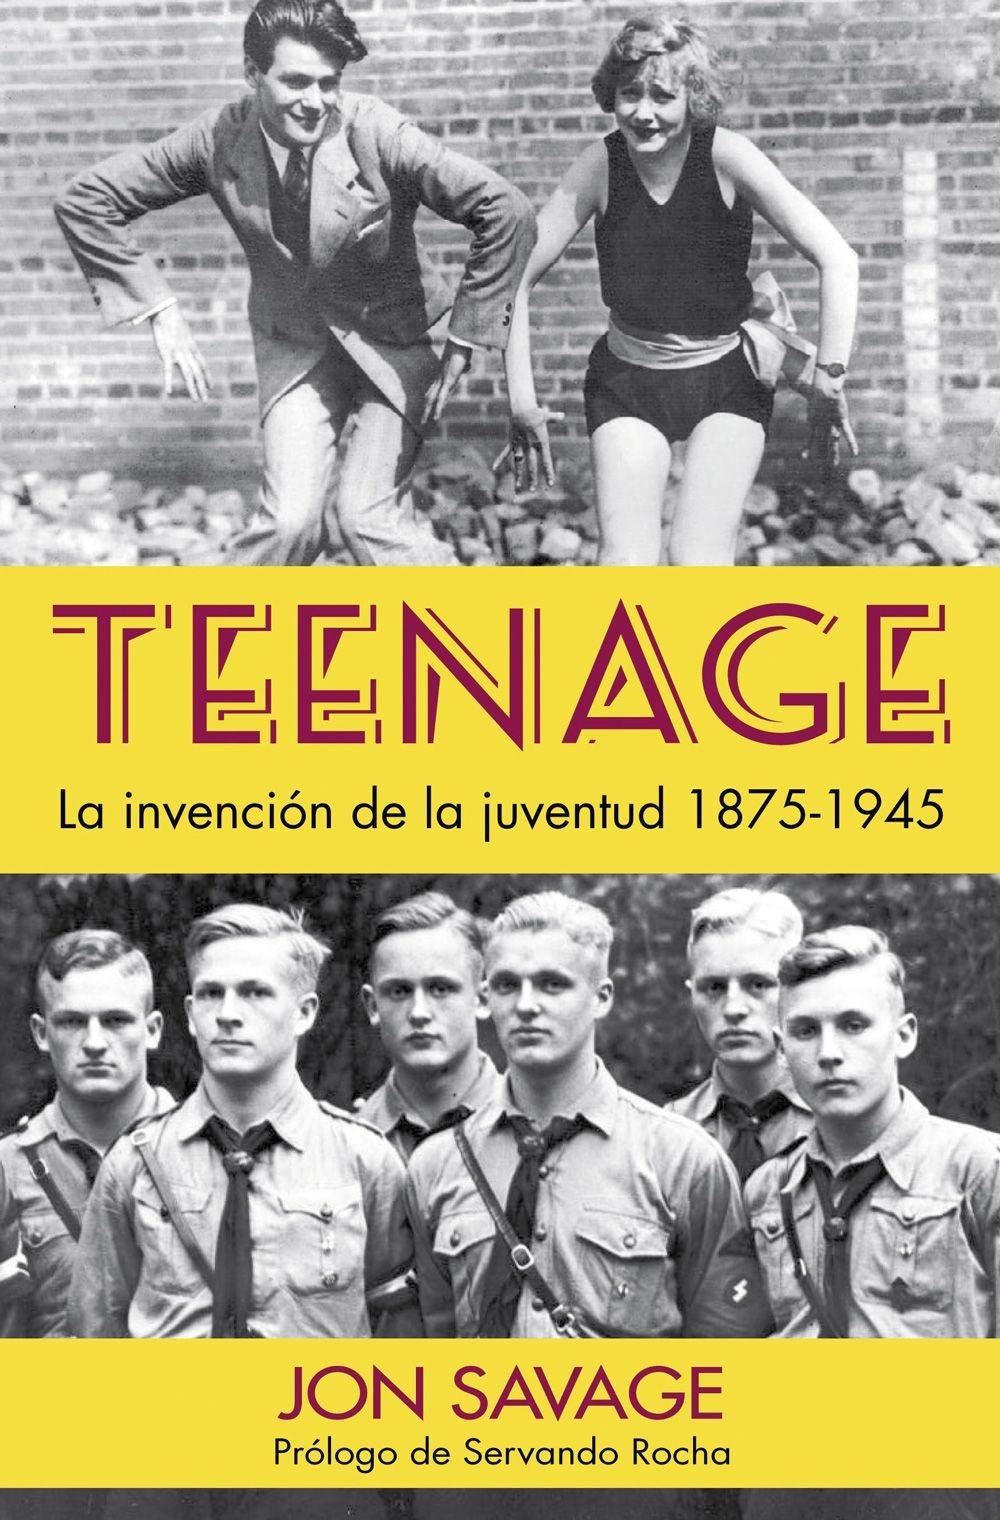 Teenage "La invención de la juventud 1875-1845 "